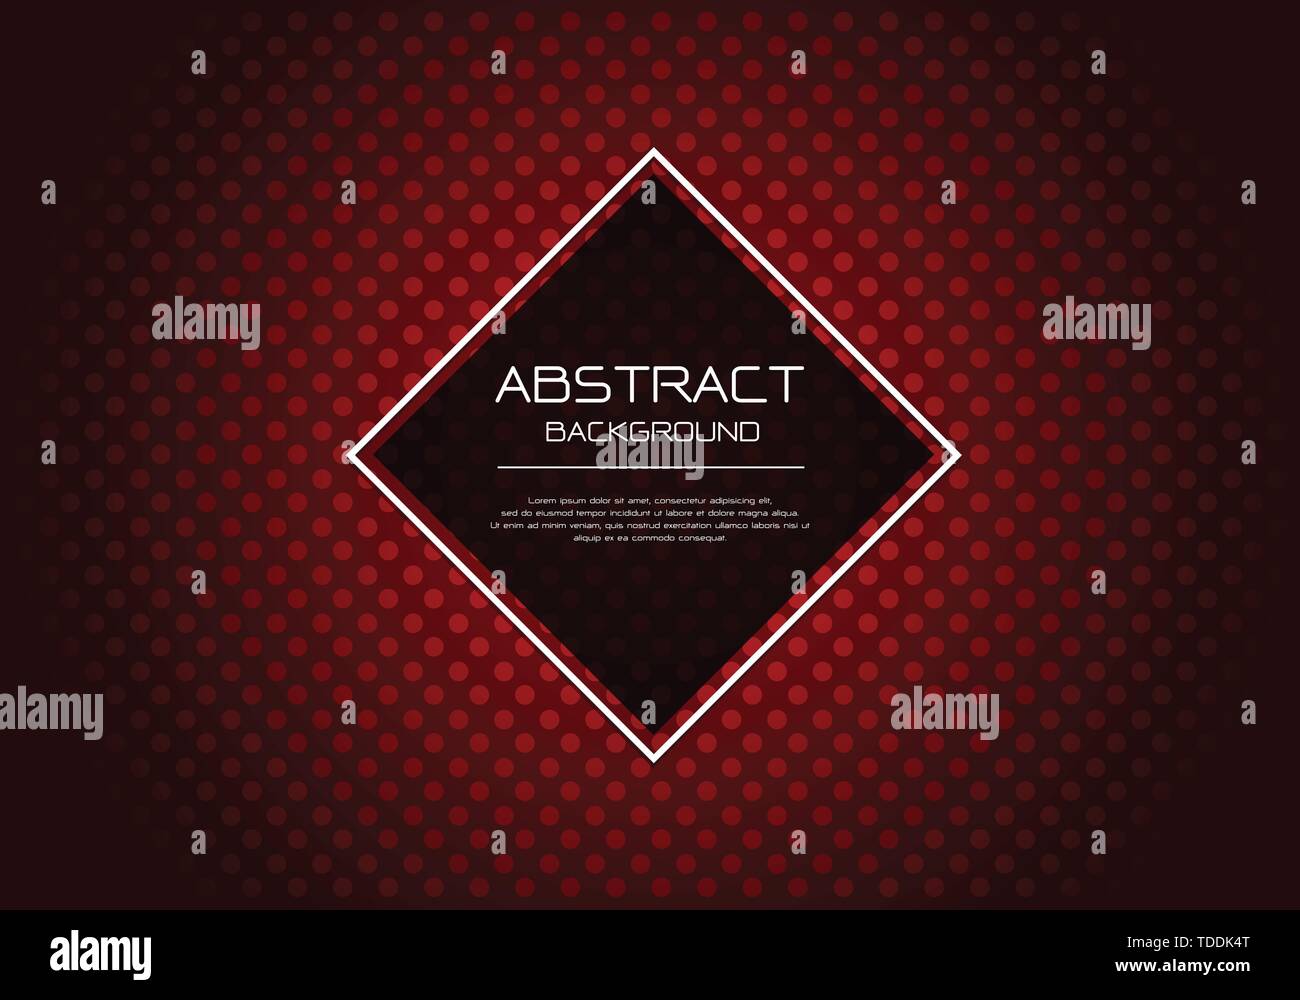 Abstract vector Luxus roter Kreis spot Muster auf dunklen mit Diamond banner weißer Rahmen template Design moderne Hintergrund Abbildung. Stock Vektor